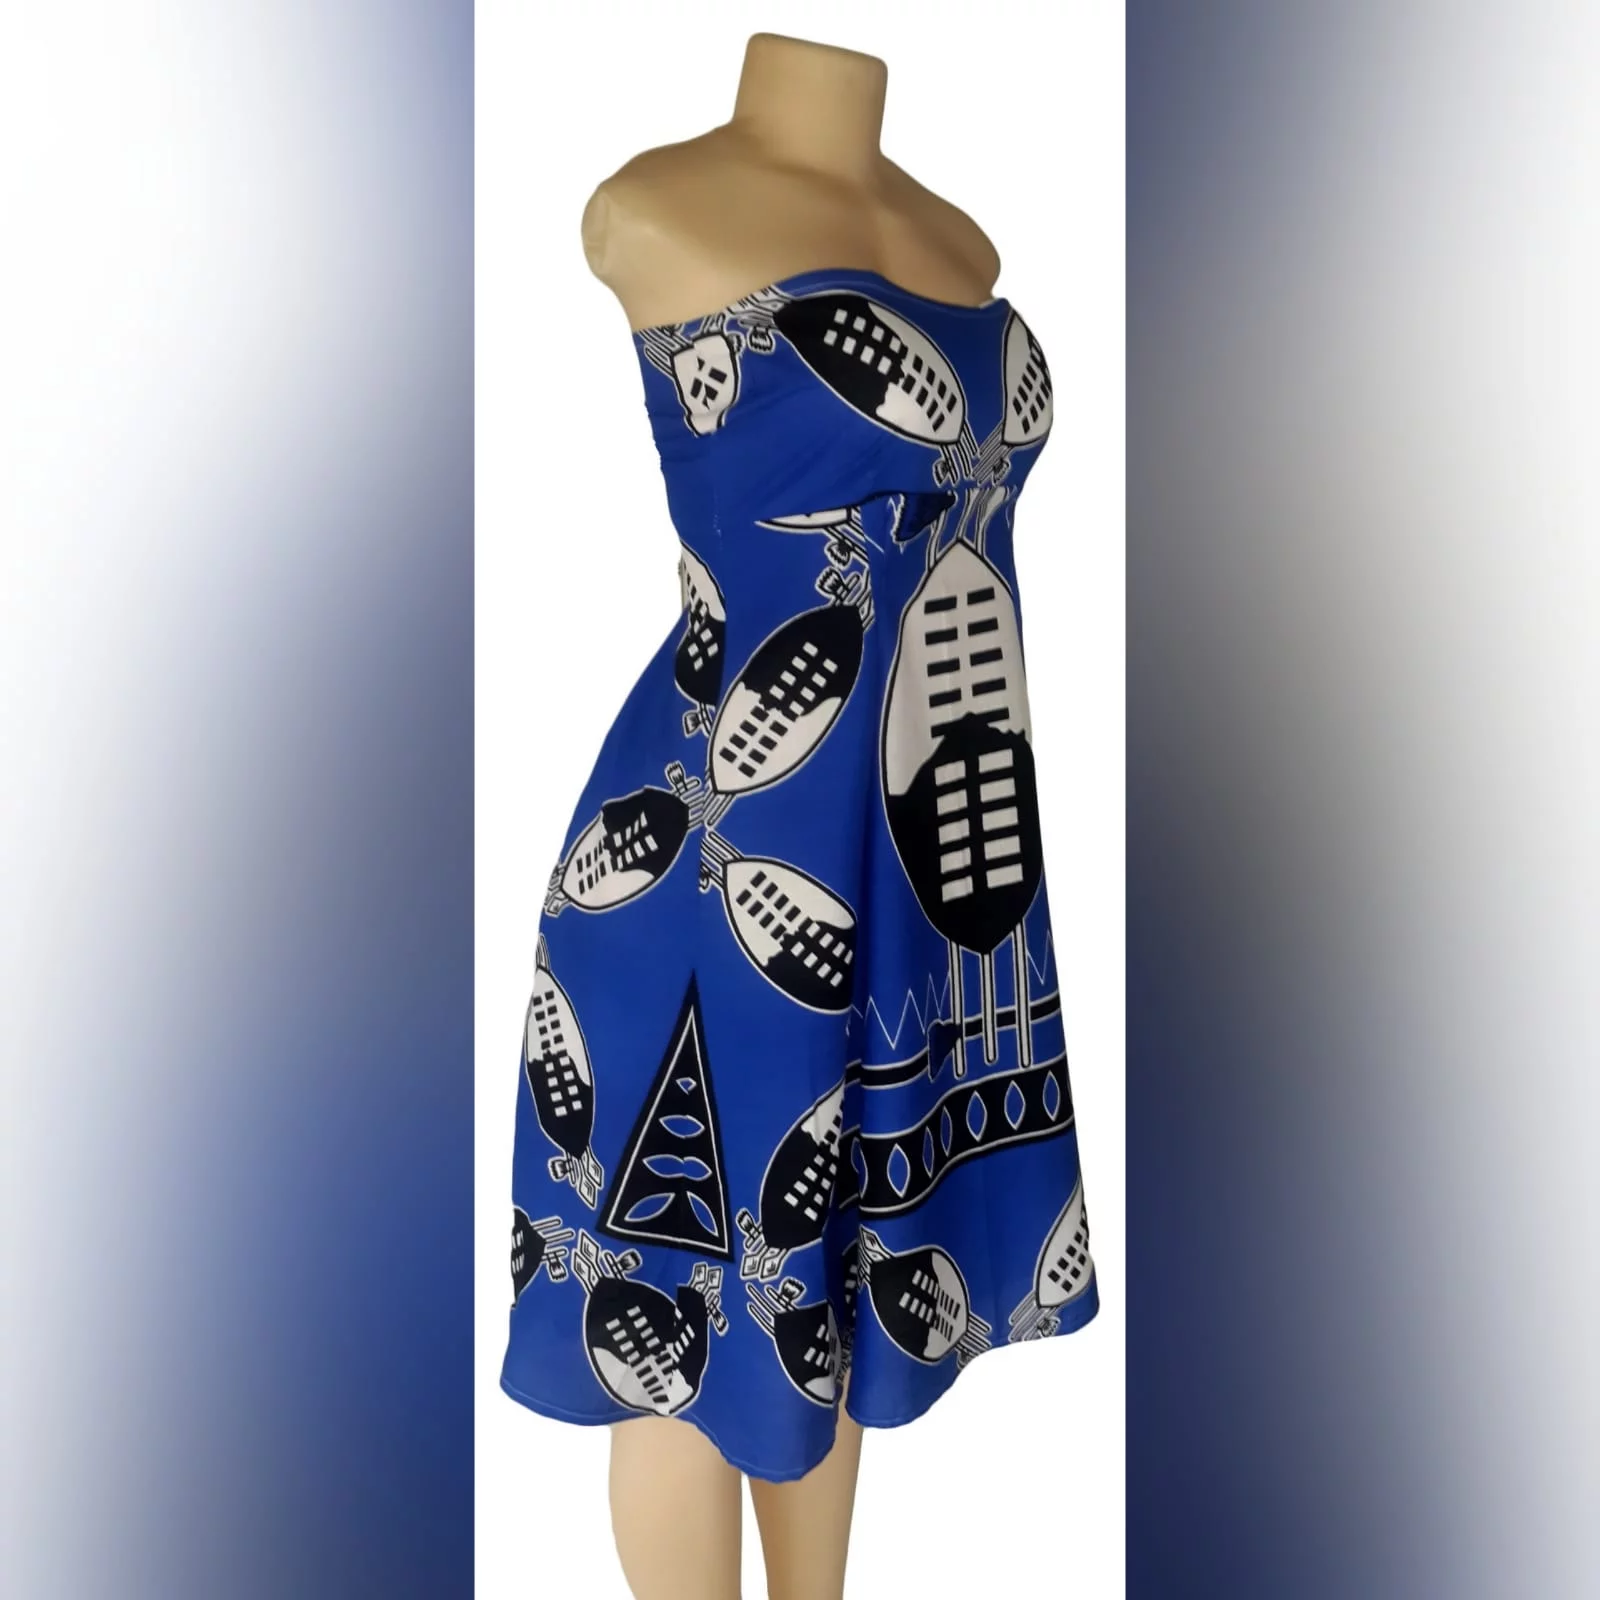 Vestido de tecido africano azul moderno 2 vestido de tecido africano swazi azul royal moderno, sem ombros. Comprimento de joelho.